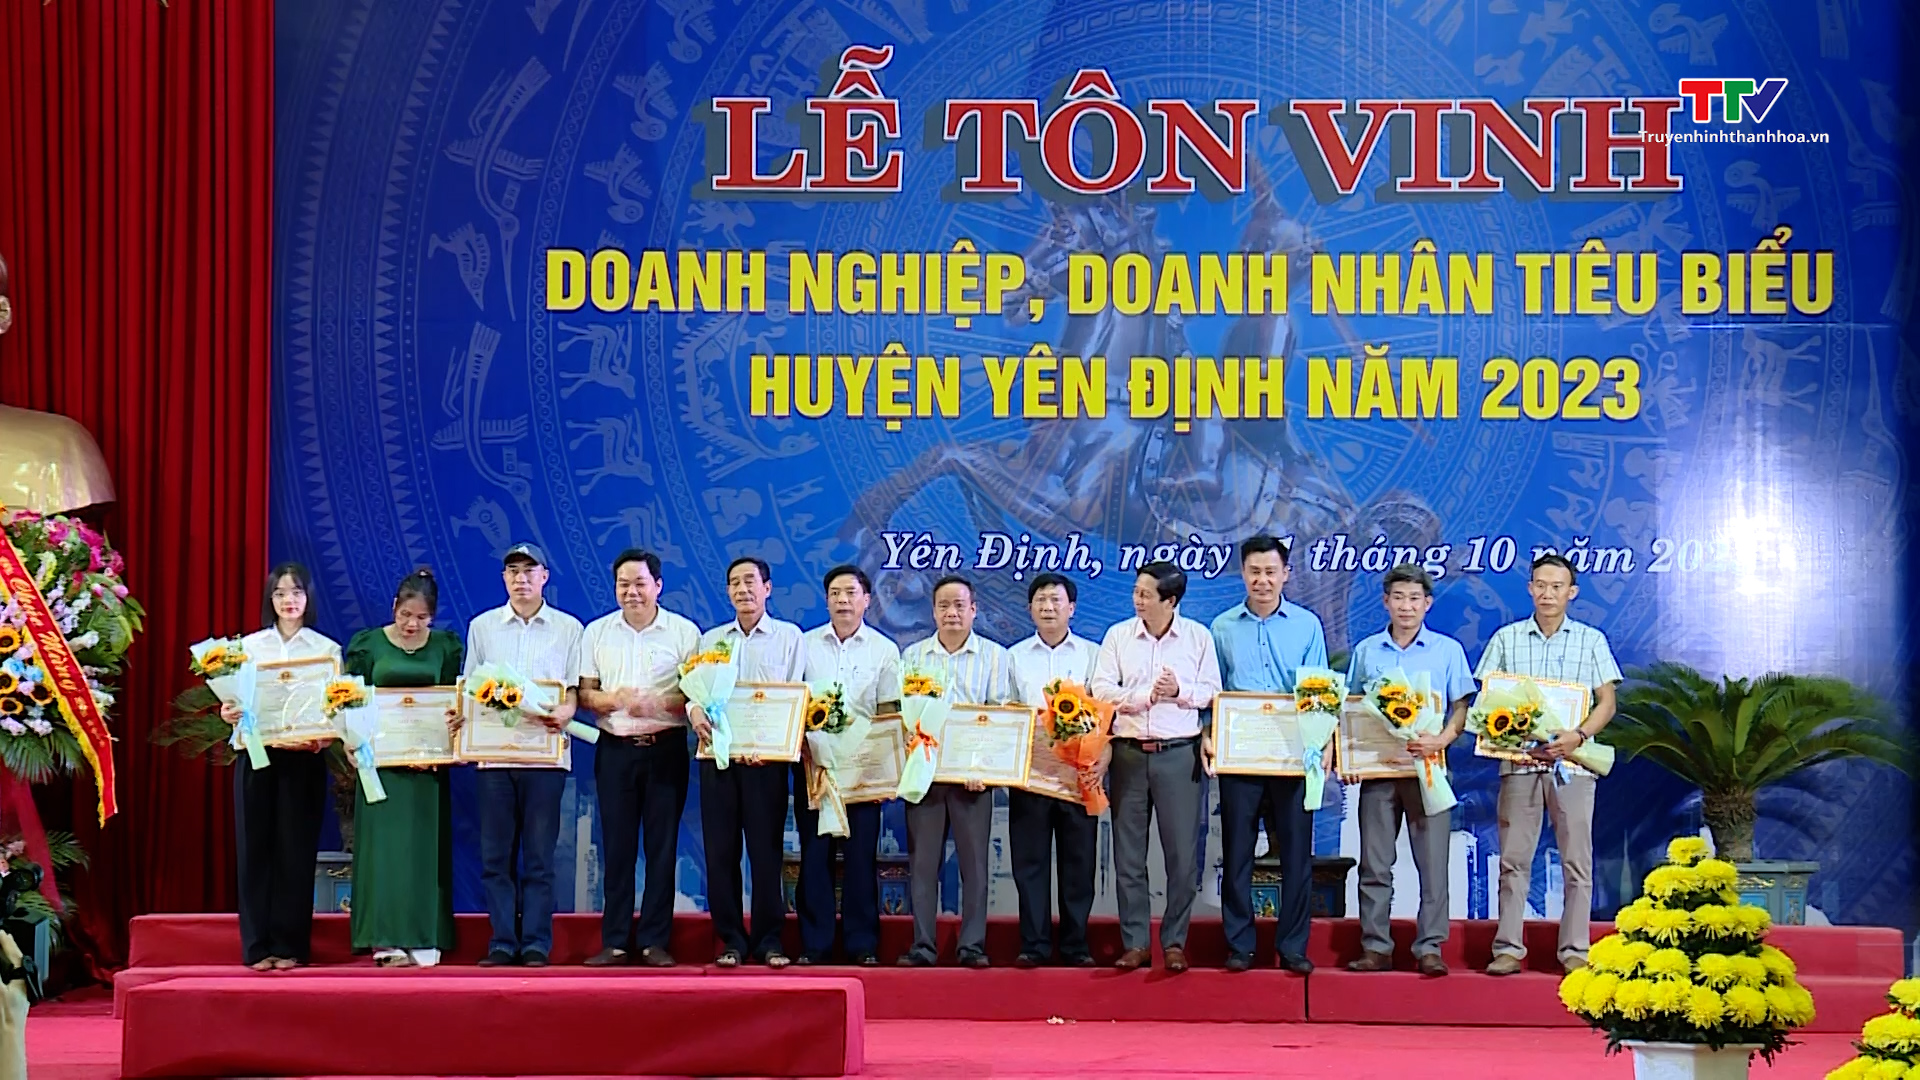 Huyện Yên Định tổ chức Lễ tôn vinh doanh nghiệp doanh nhân tiêu biểu  năm 2023 - Ảnh 3.